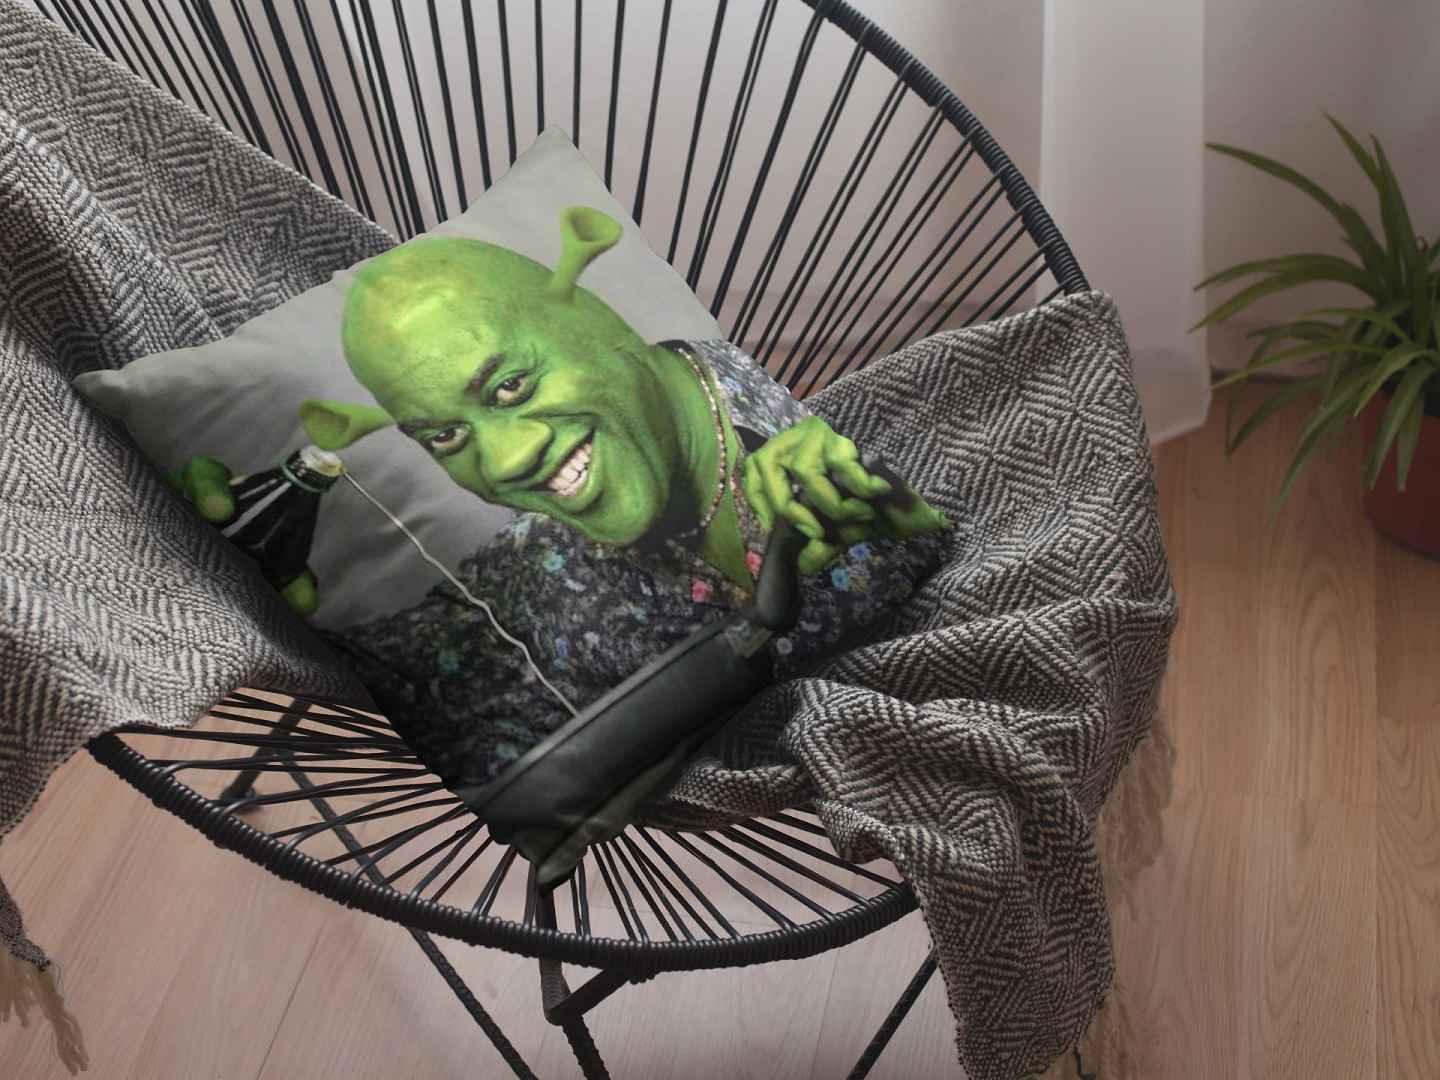 Ainsley Harriott Shrek throw pillow placed on a modern basket-style chair.